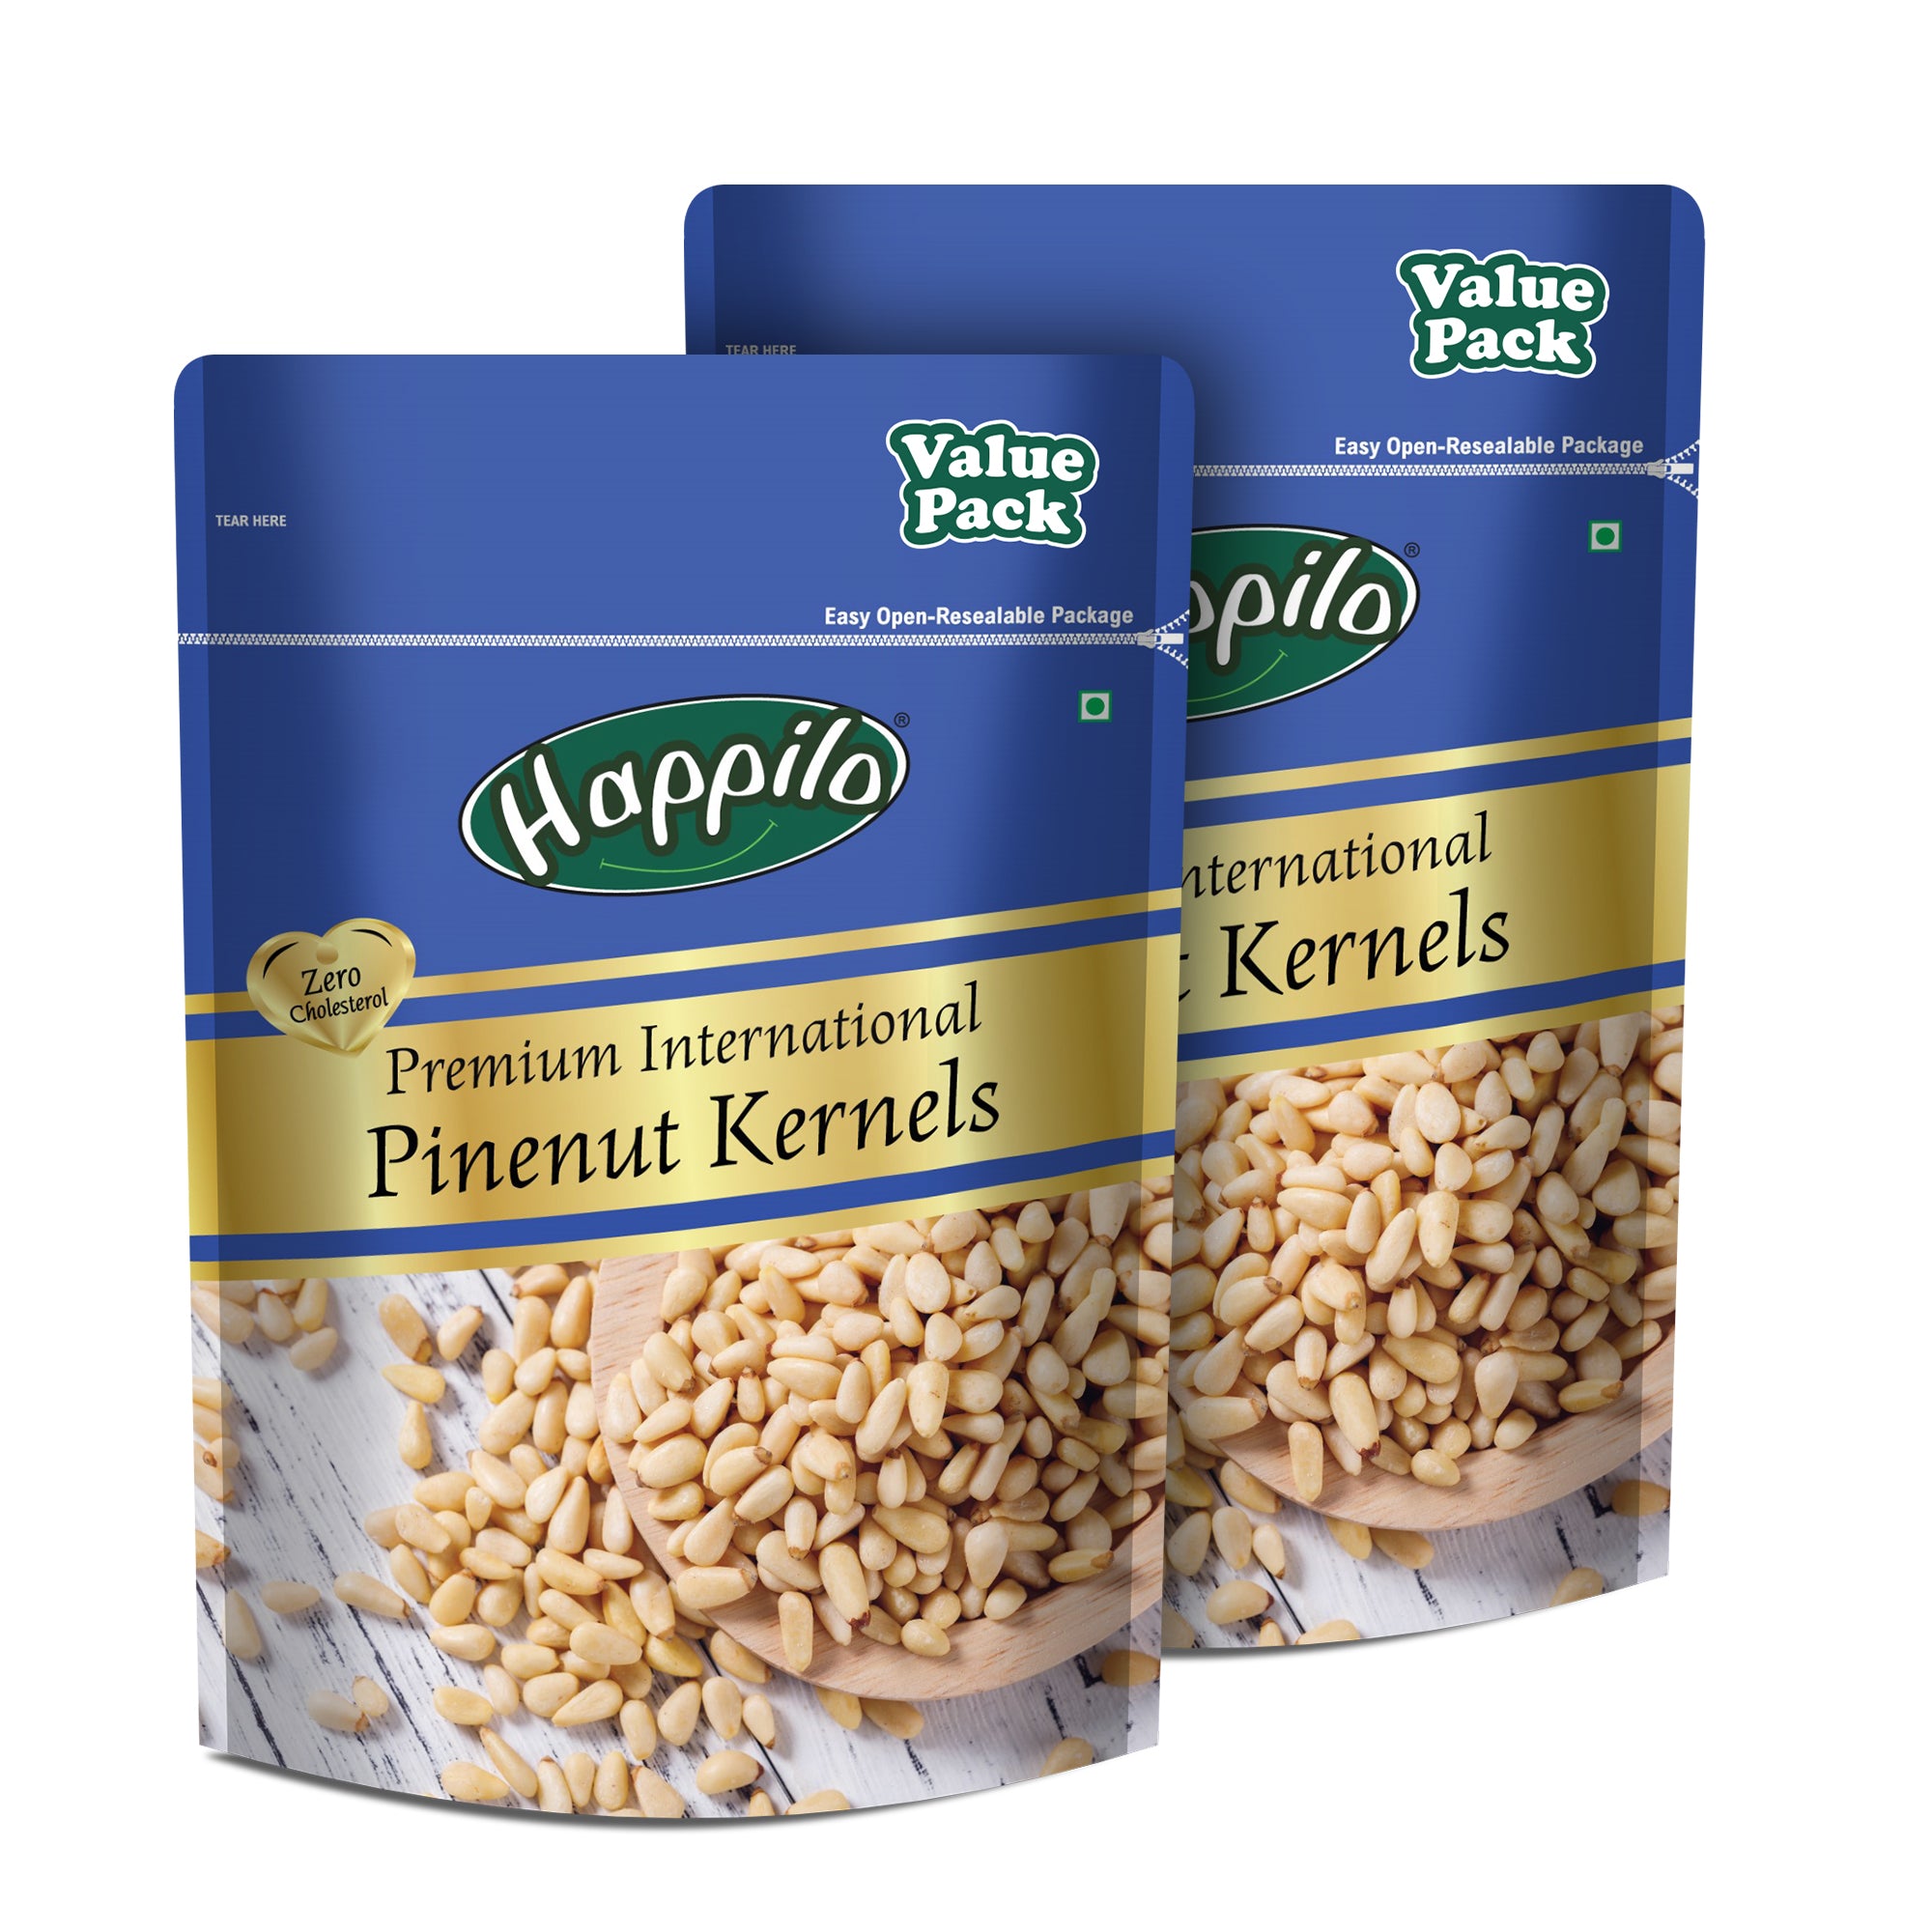 Happilo 100% Natural Peeled Pine Nut Kernels